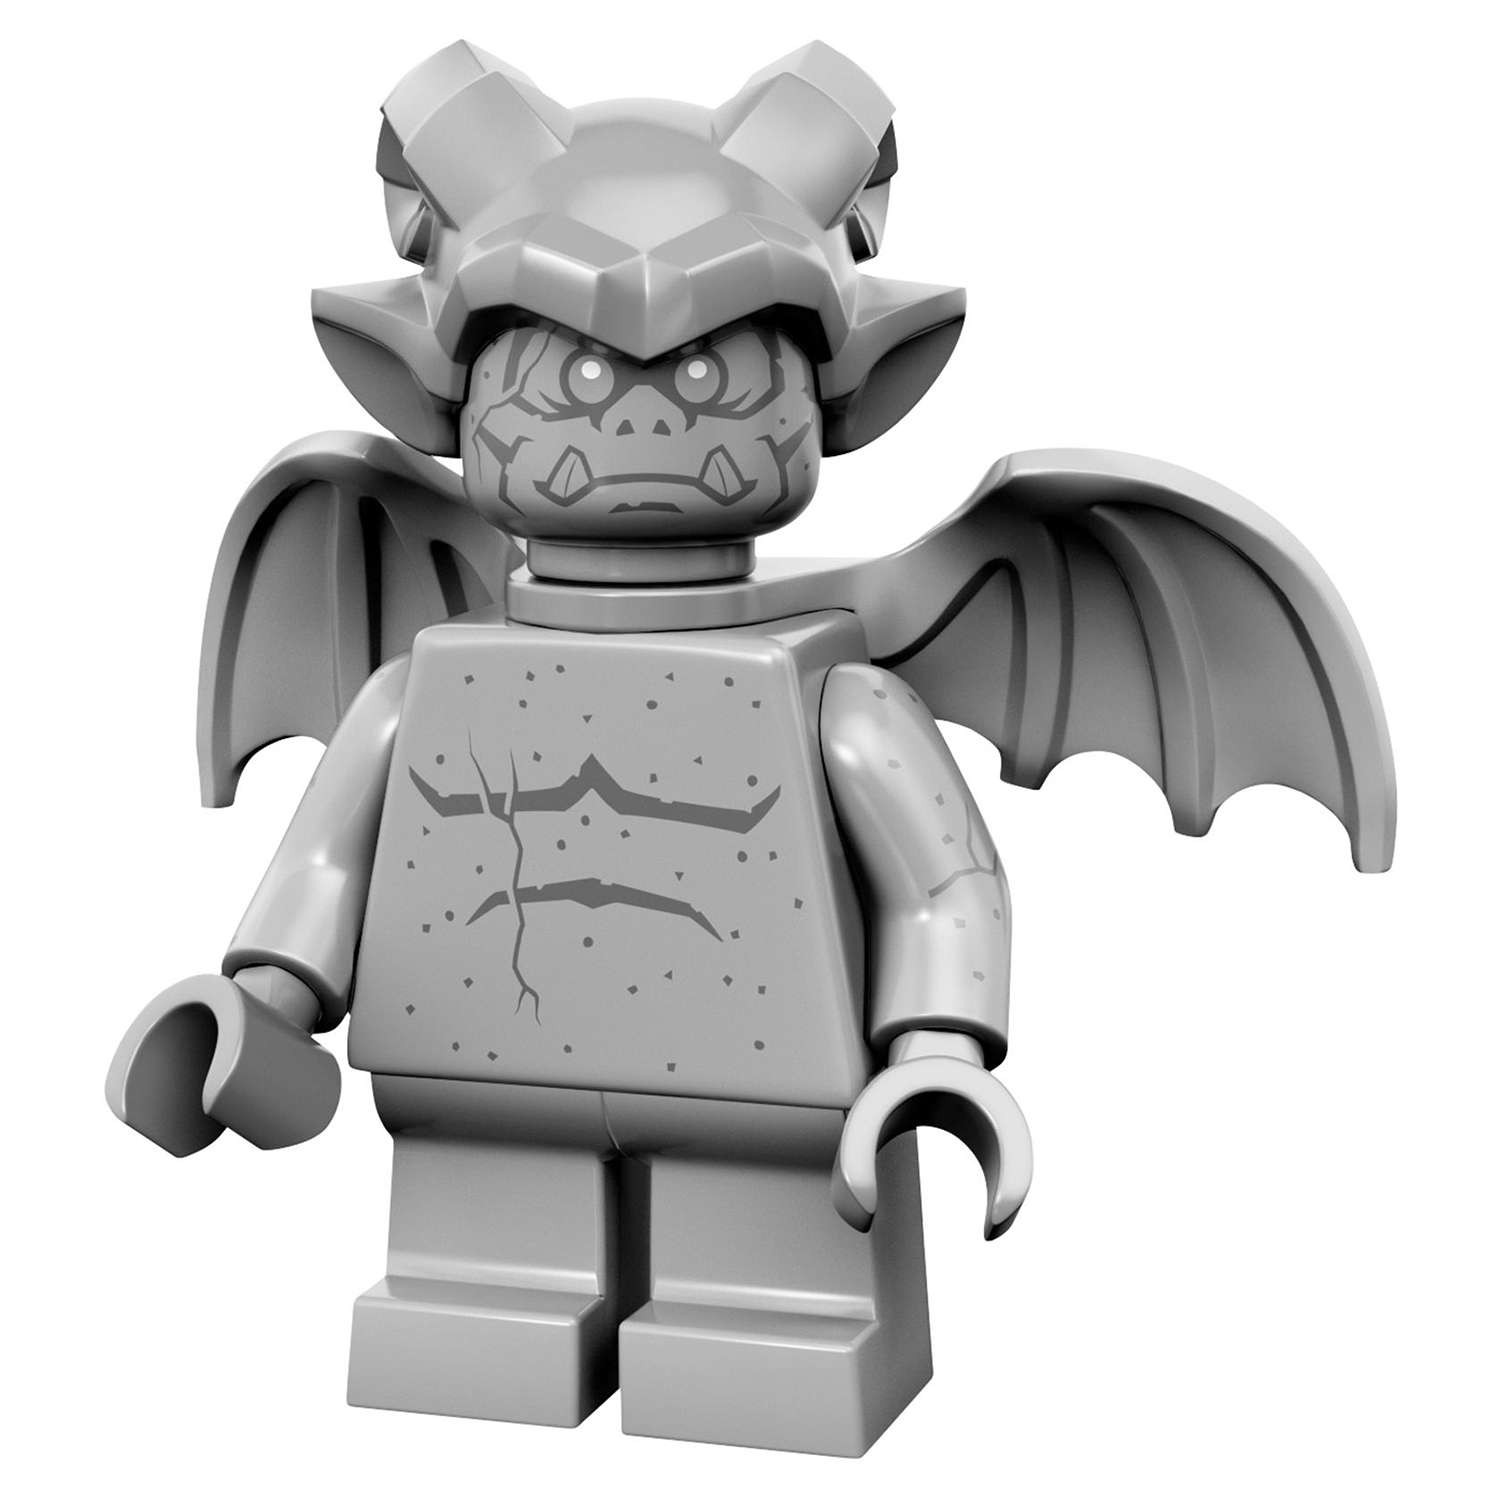 Конструктор LEGO Minifigures серия 14: Монстры (71010) в непрозрачной упаковке (Сюрприз) - фото 30